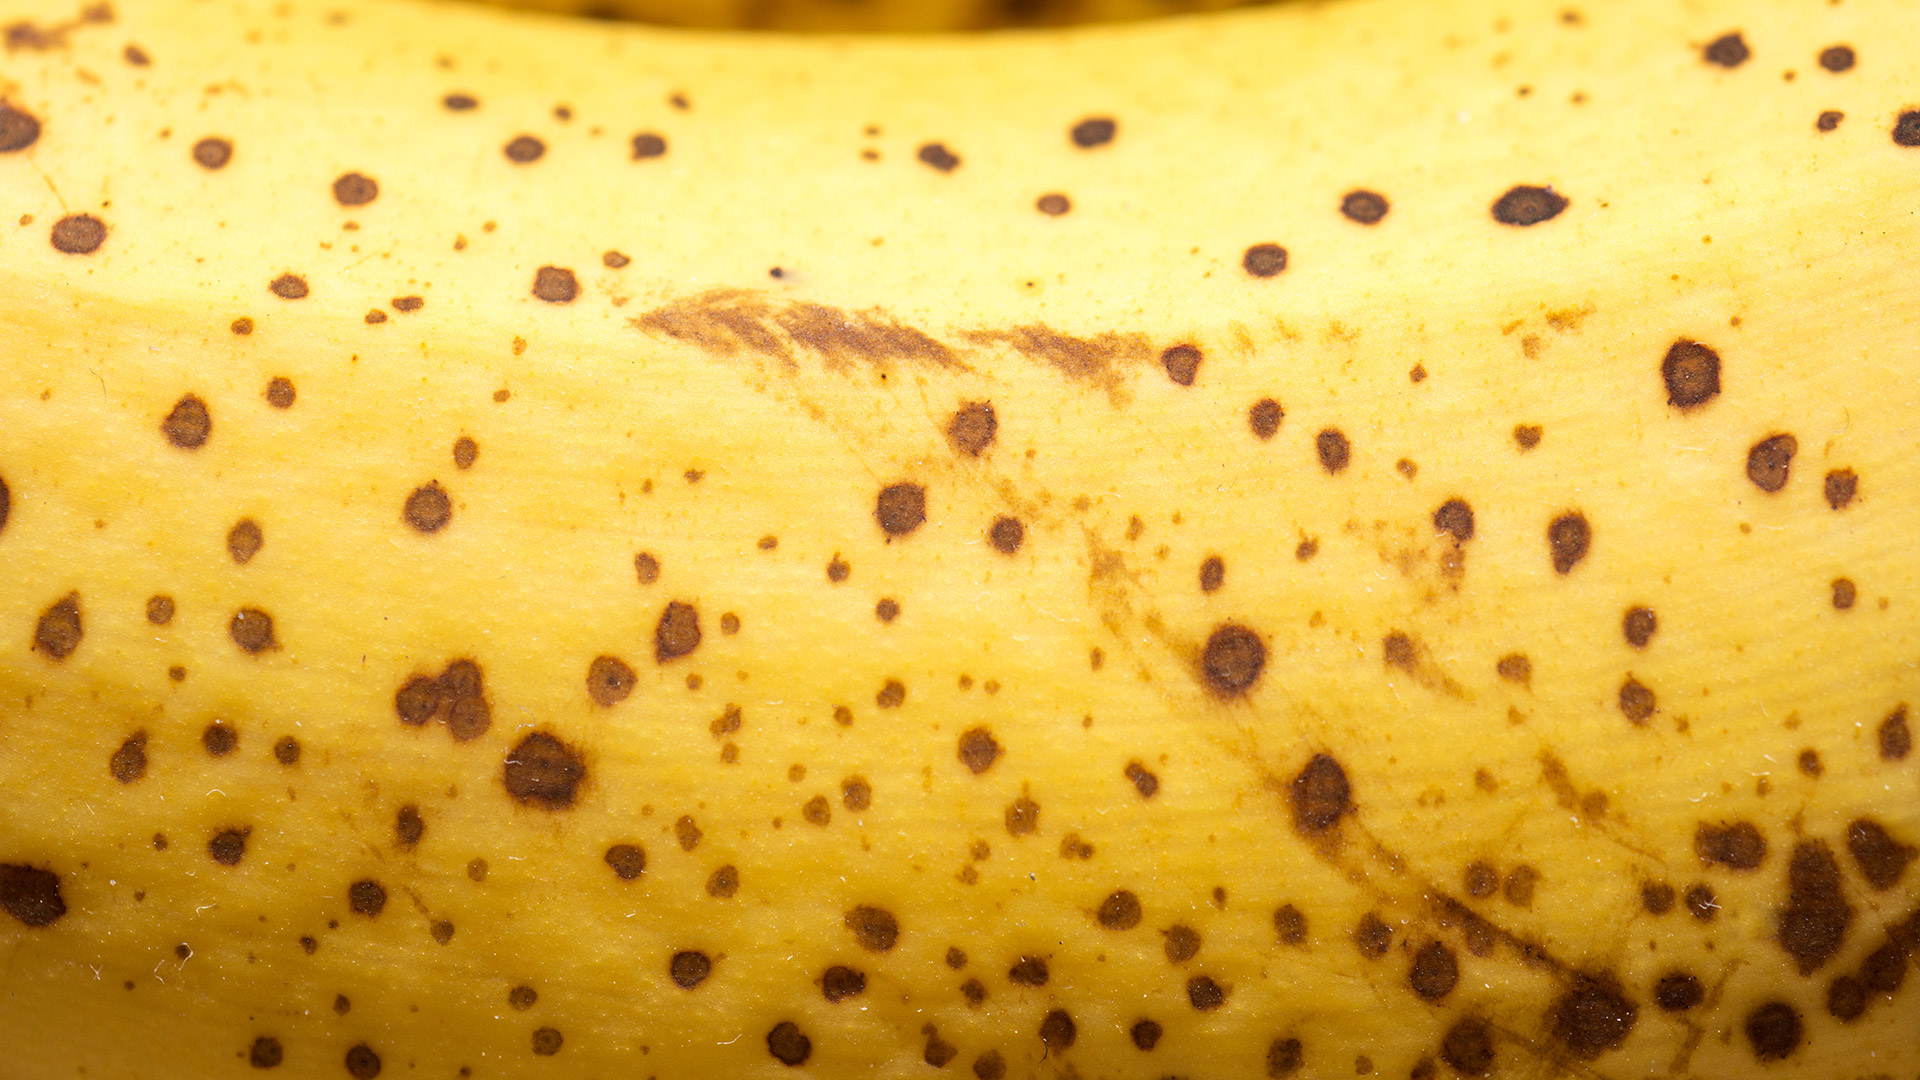 En un estudio publicado en 2009 en la revista Food Science and Technology Research, los científicos de la Universidad de Teikyo en Japón descubrieron que las bananas con manchas oscuras eran ocho veces más efectivas para mejorar el poder de los glóbulos blancos (que combaten las infecciones) que las de piel verde (Getty Images)